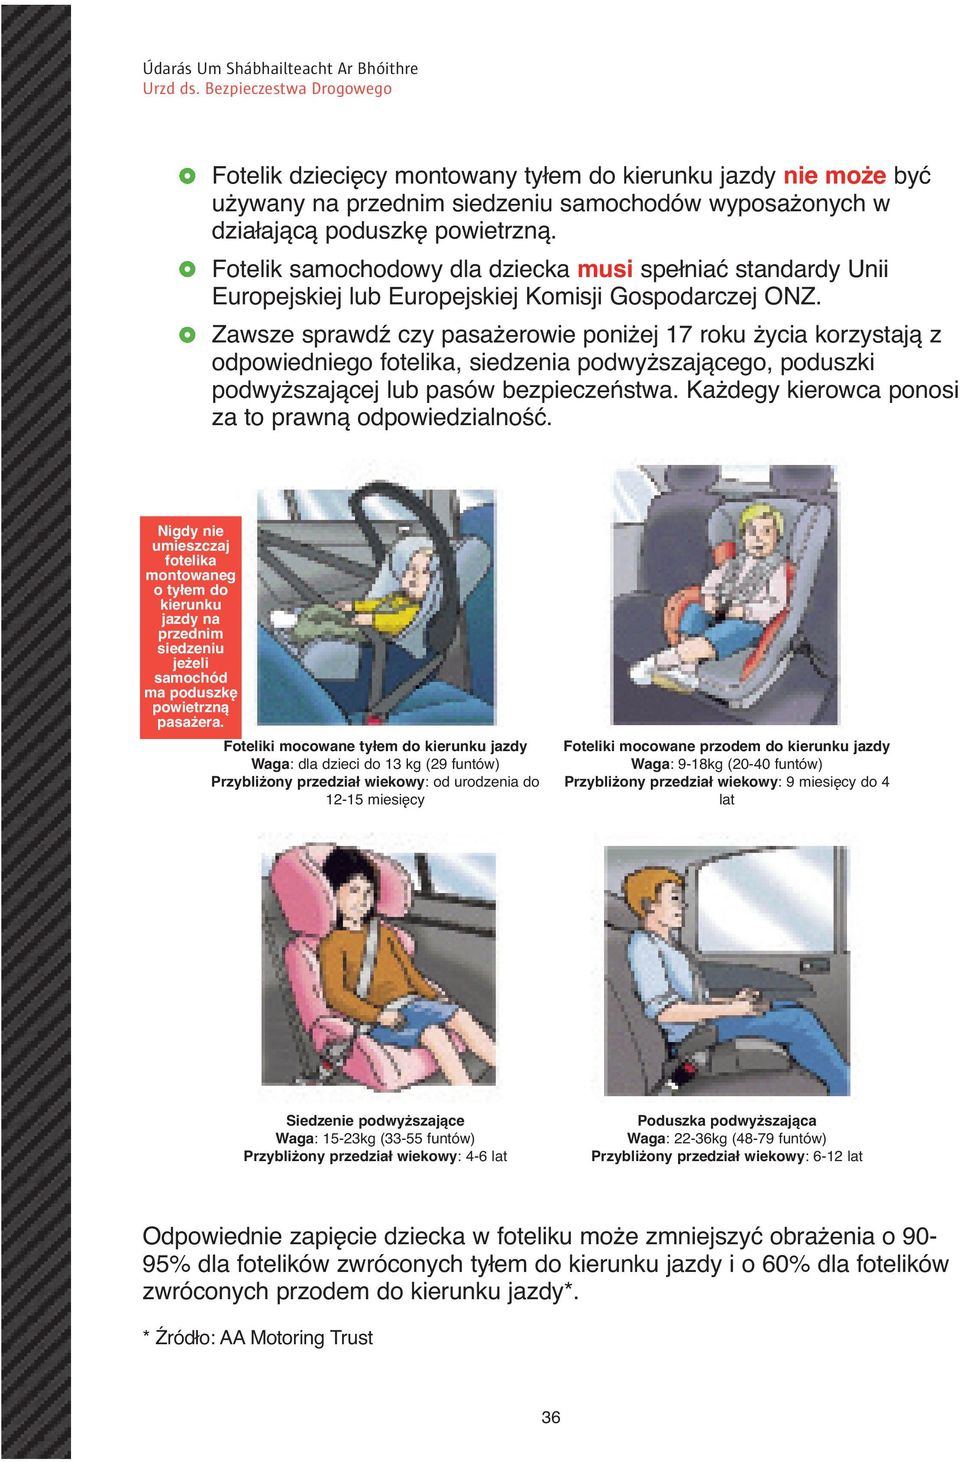 Zawsze sprawdź czy pasażerowie poniżej 17 roku życia korzystają z odpowiedniego fotelika, siedzenia podwyższającego, poduszki podwyższającej lub pasów bezpieczeństwa.